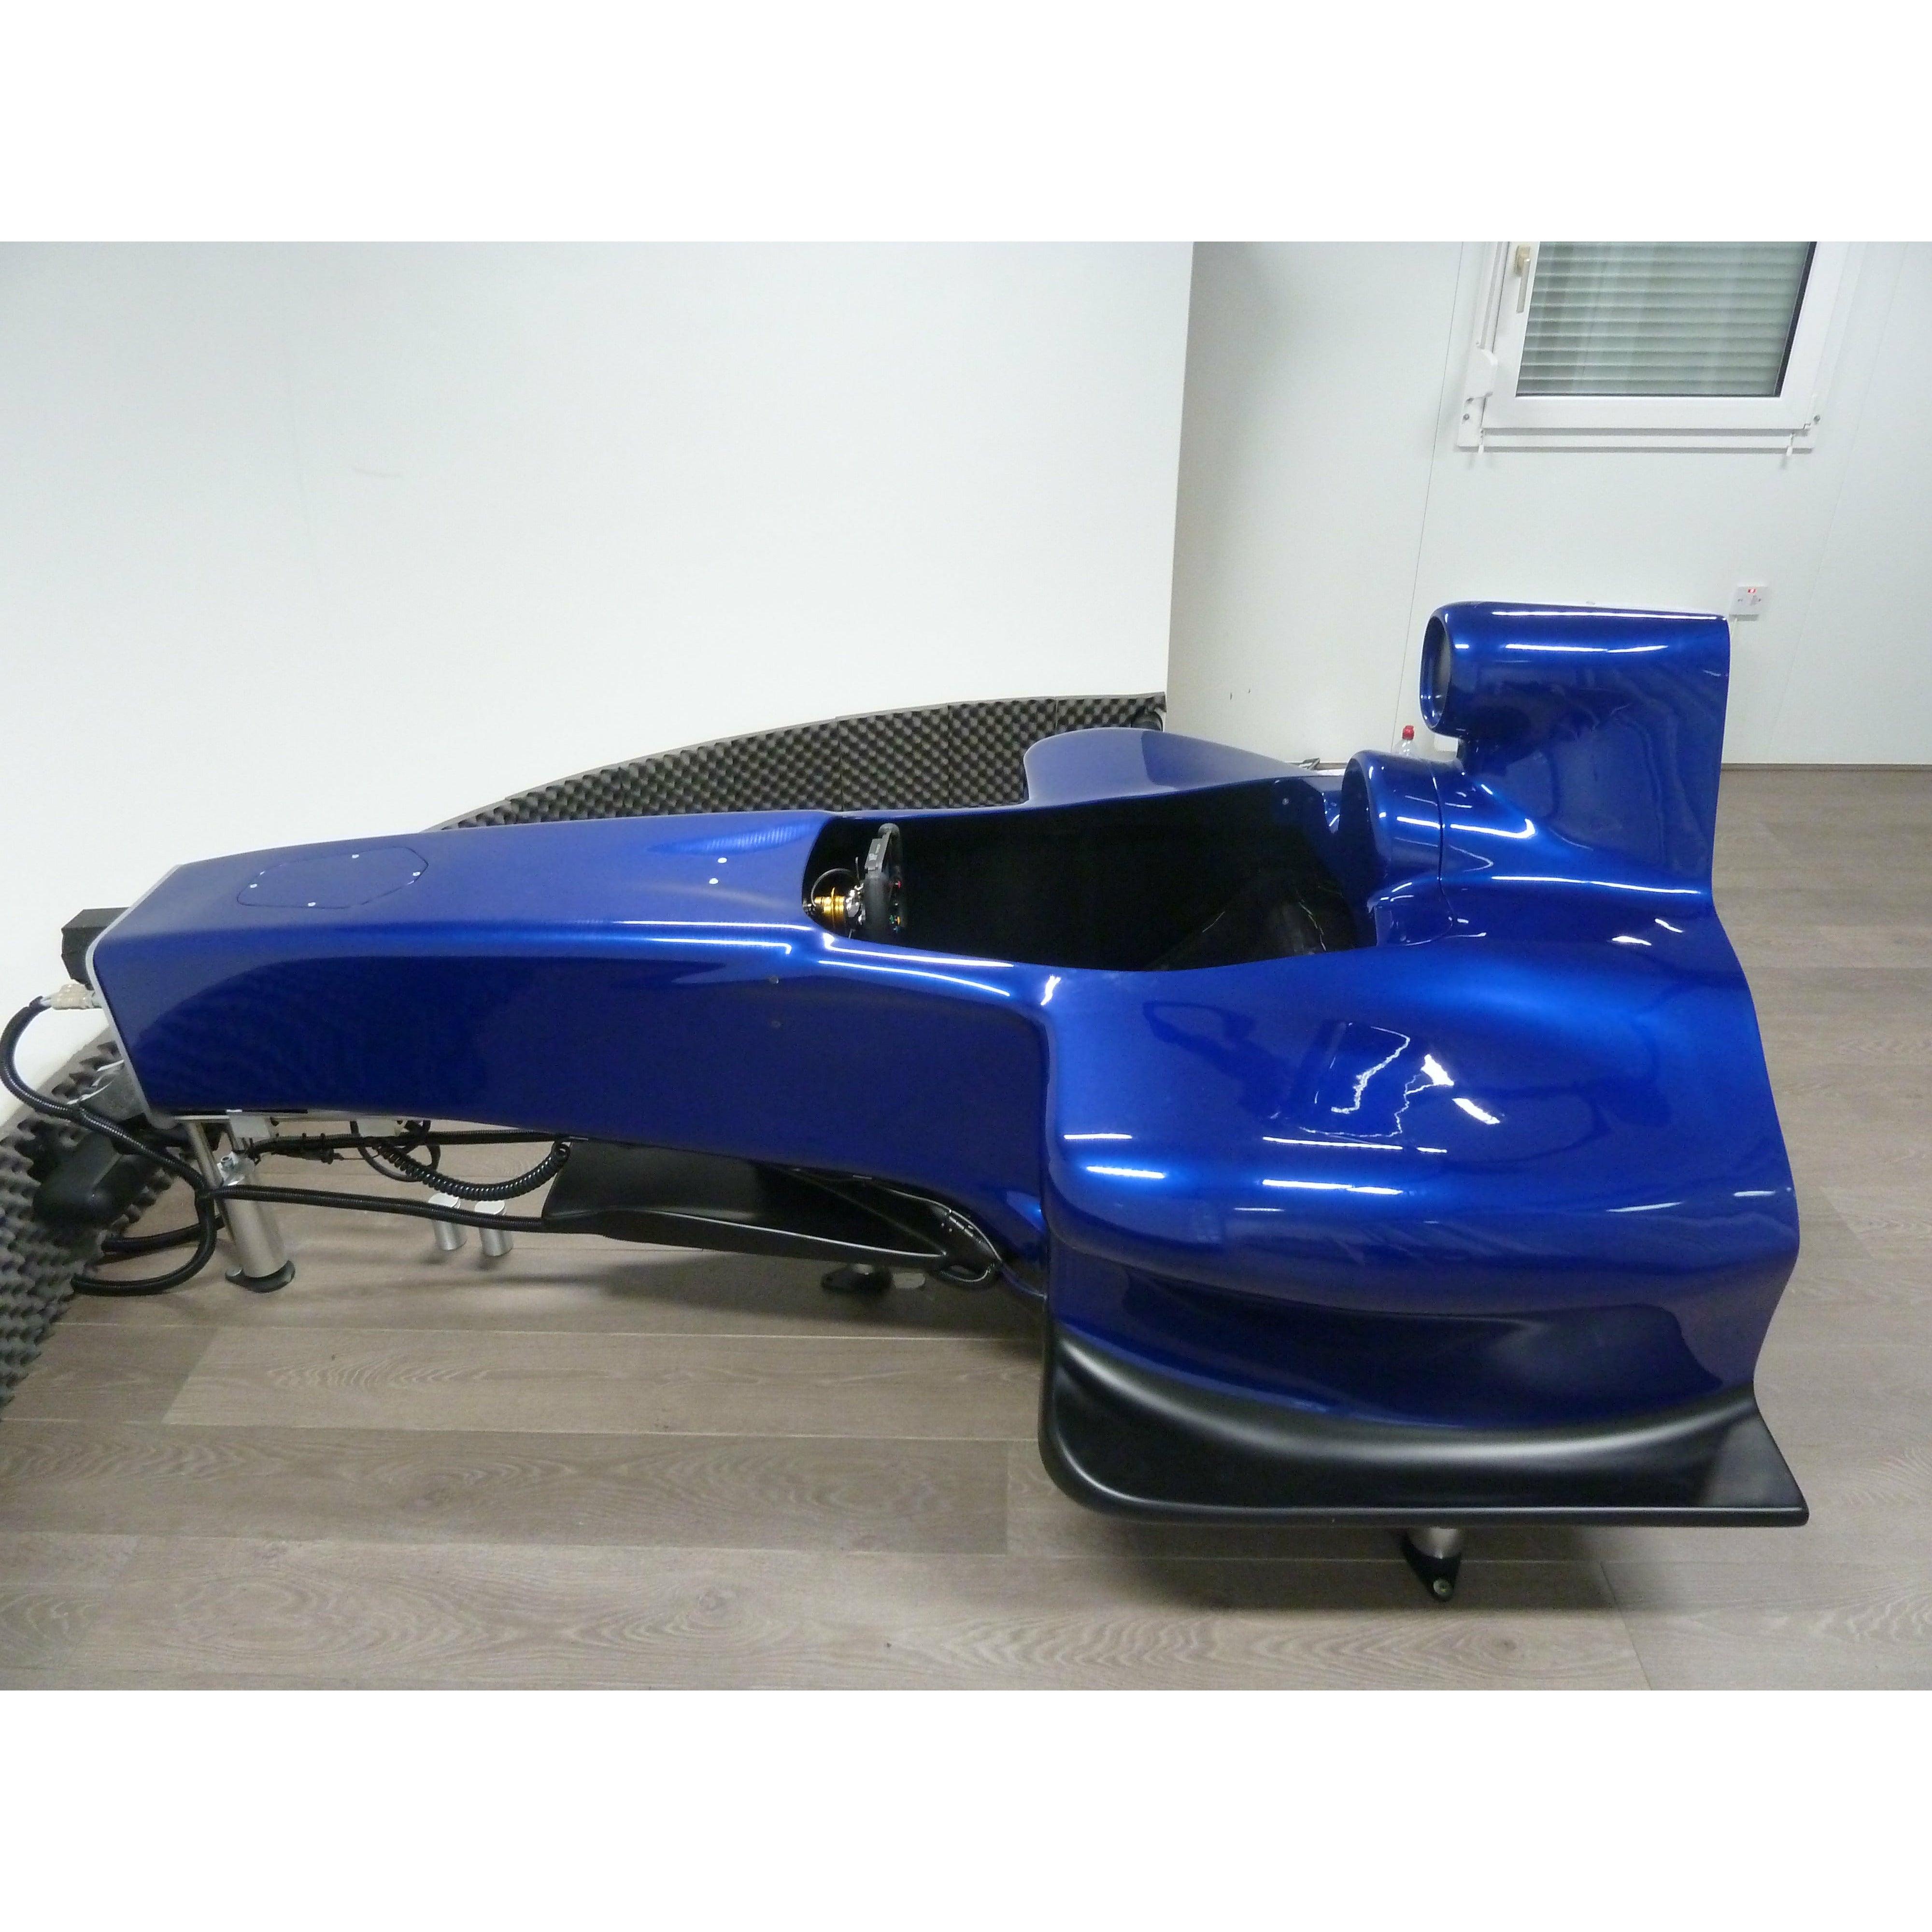 Half F1 Car Racing Simulator | Cool Performance Racing Simulators